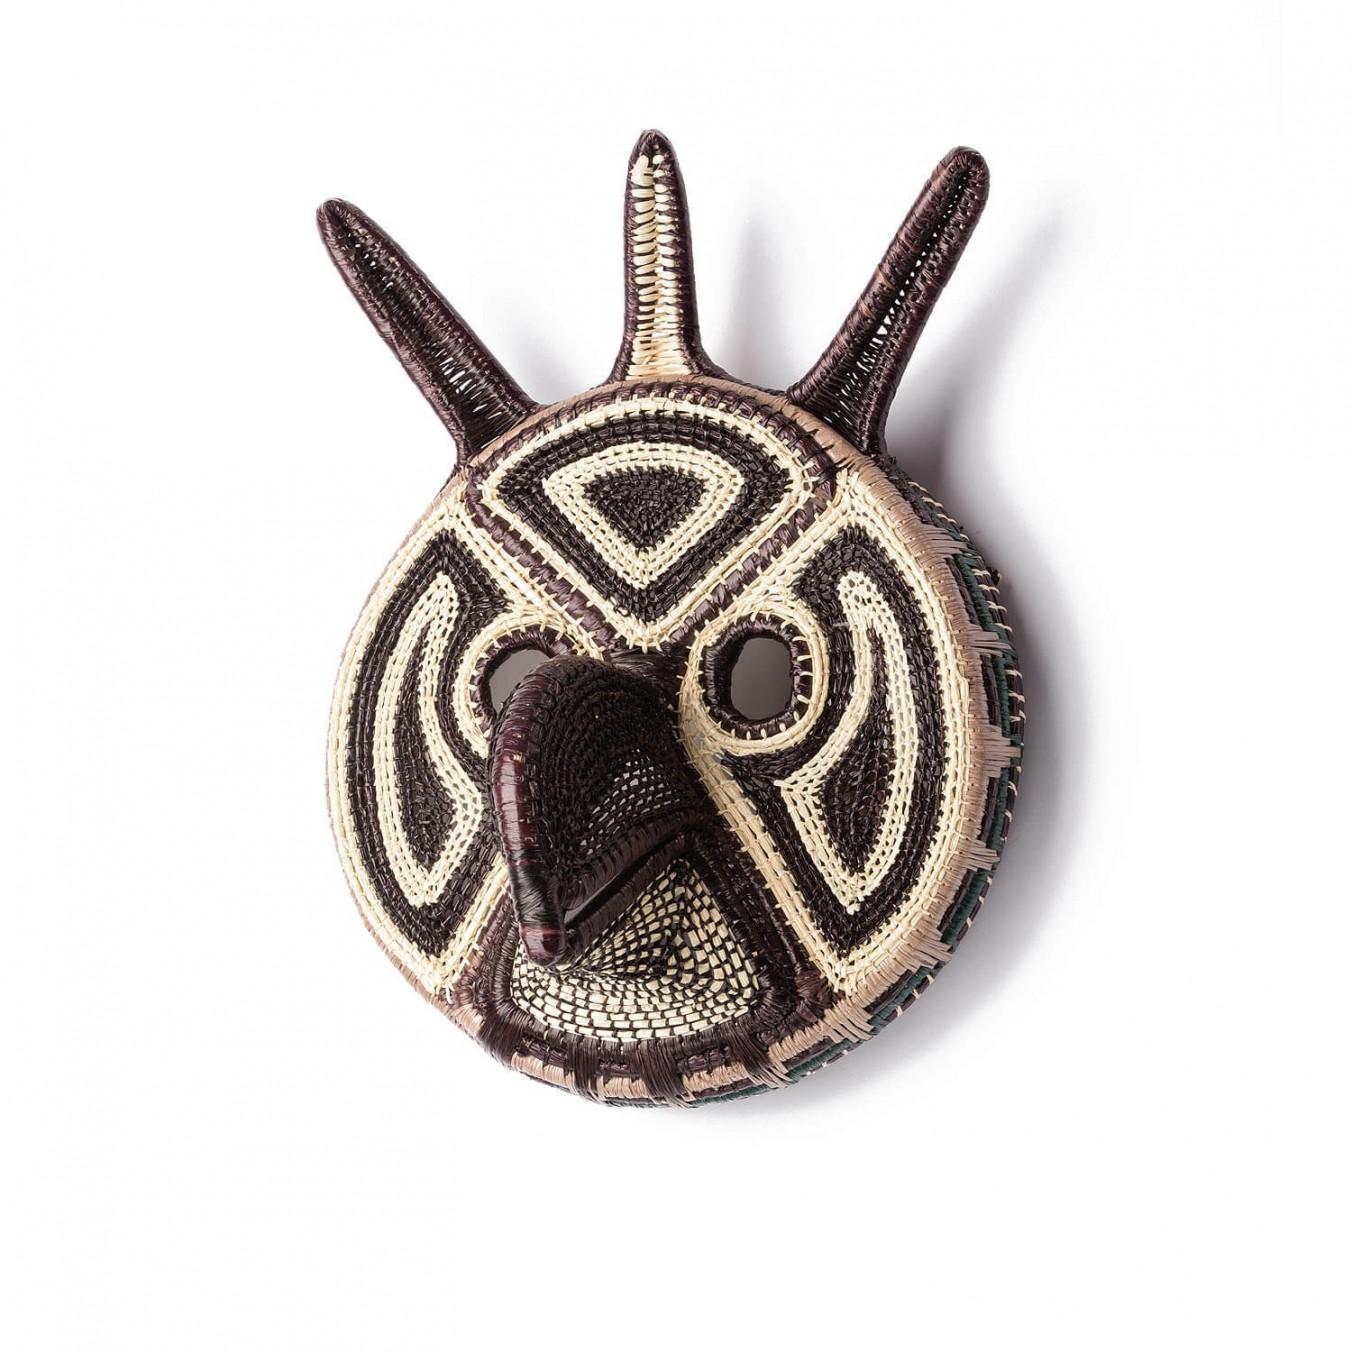 Dekorative handgewebte Maske aus Panama, Mascara von Ethic&Tropic

Diese außergewöhnlichen Kunst- und Dekorationsgegenstände stammen aus dem schamanischen Glauben und den Ritualen der indigenen Embera-Stämme in Panama. Durch die Schamanen kommen die